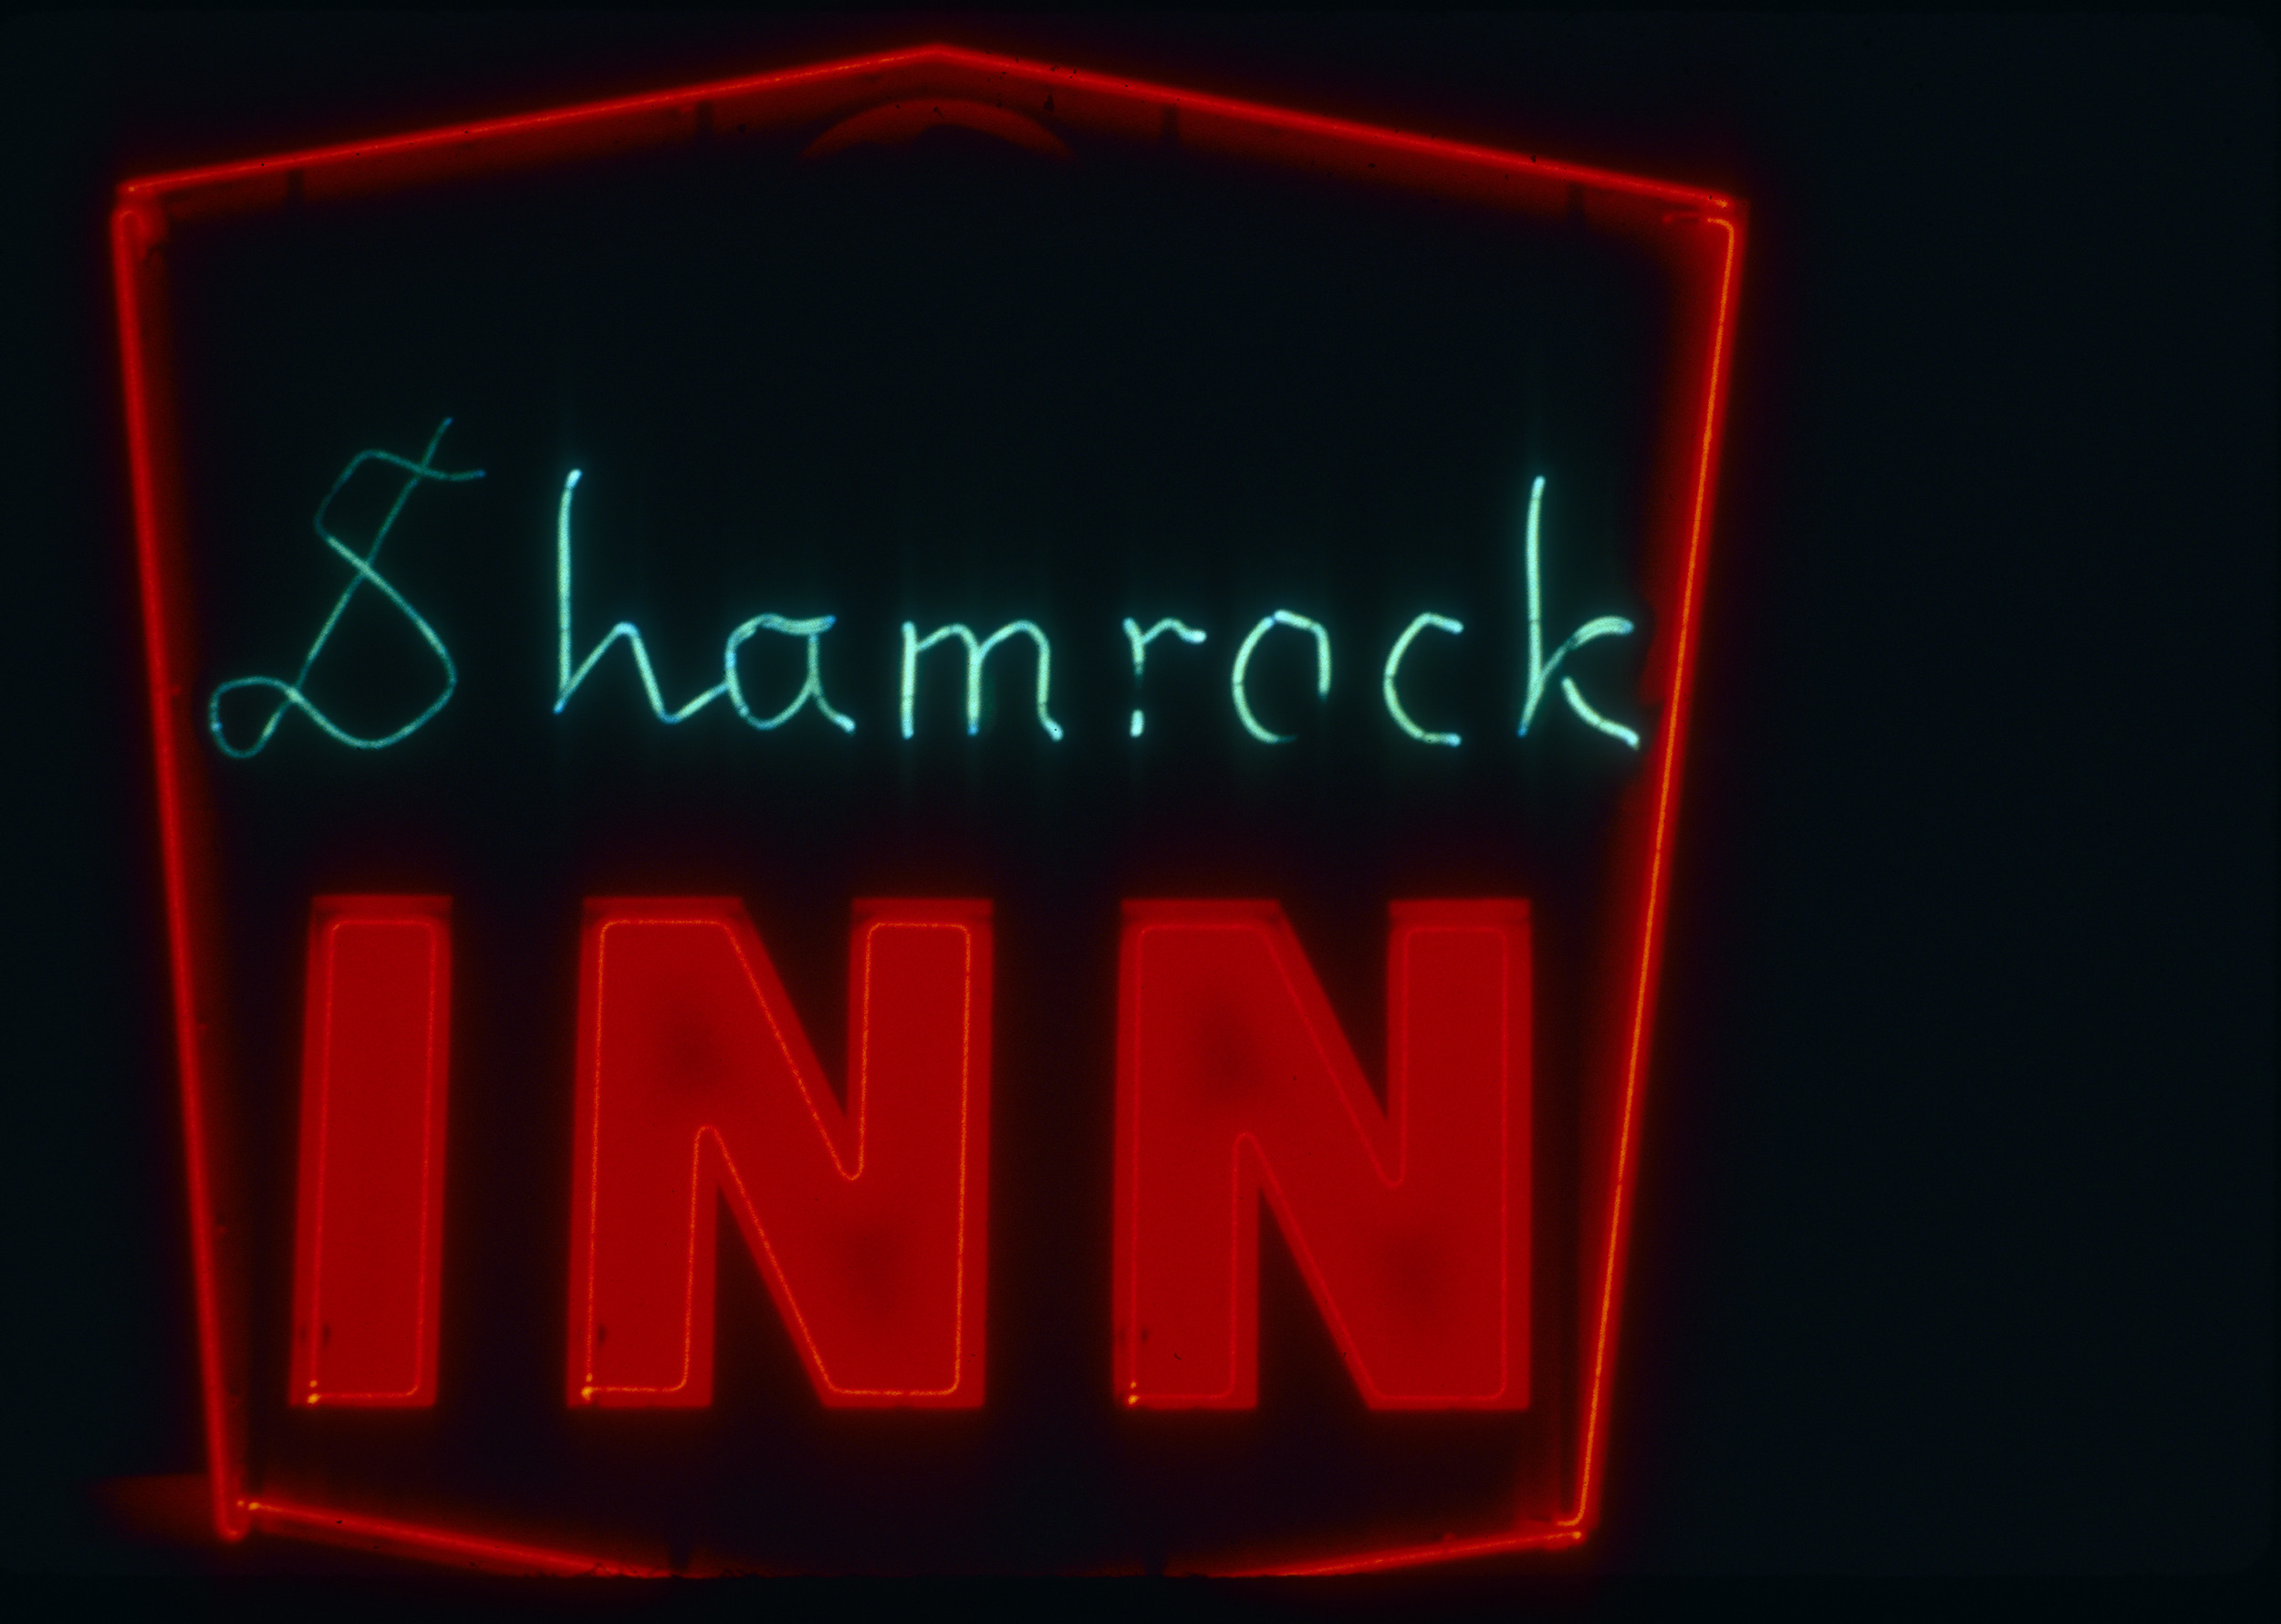 Slide of the neon sign for the Shamrock Inn, Reno, Nevada, 1986